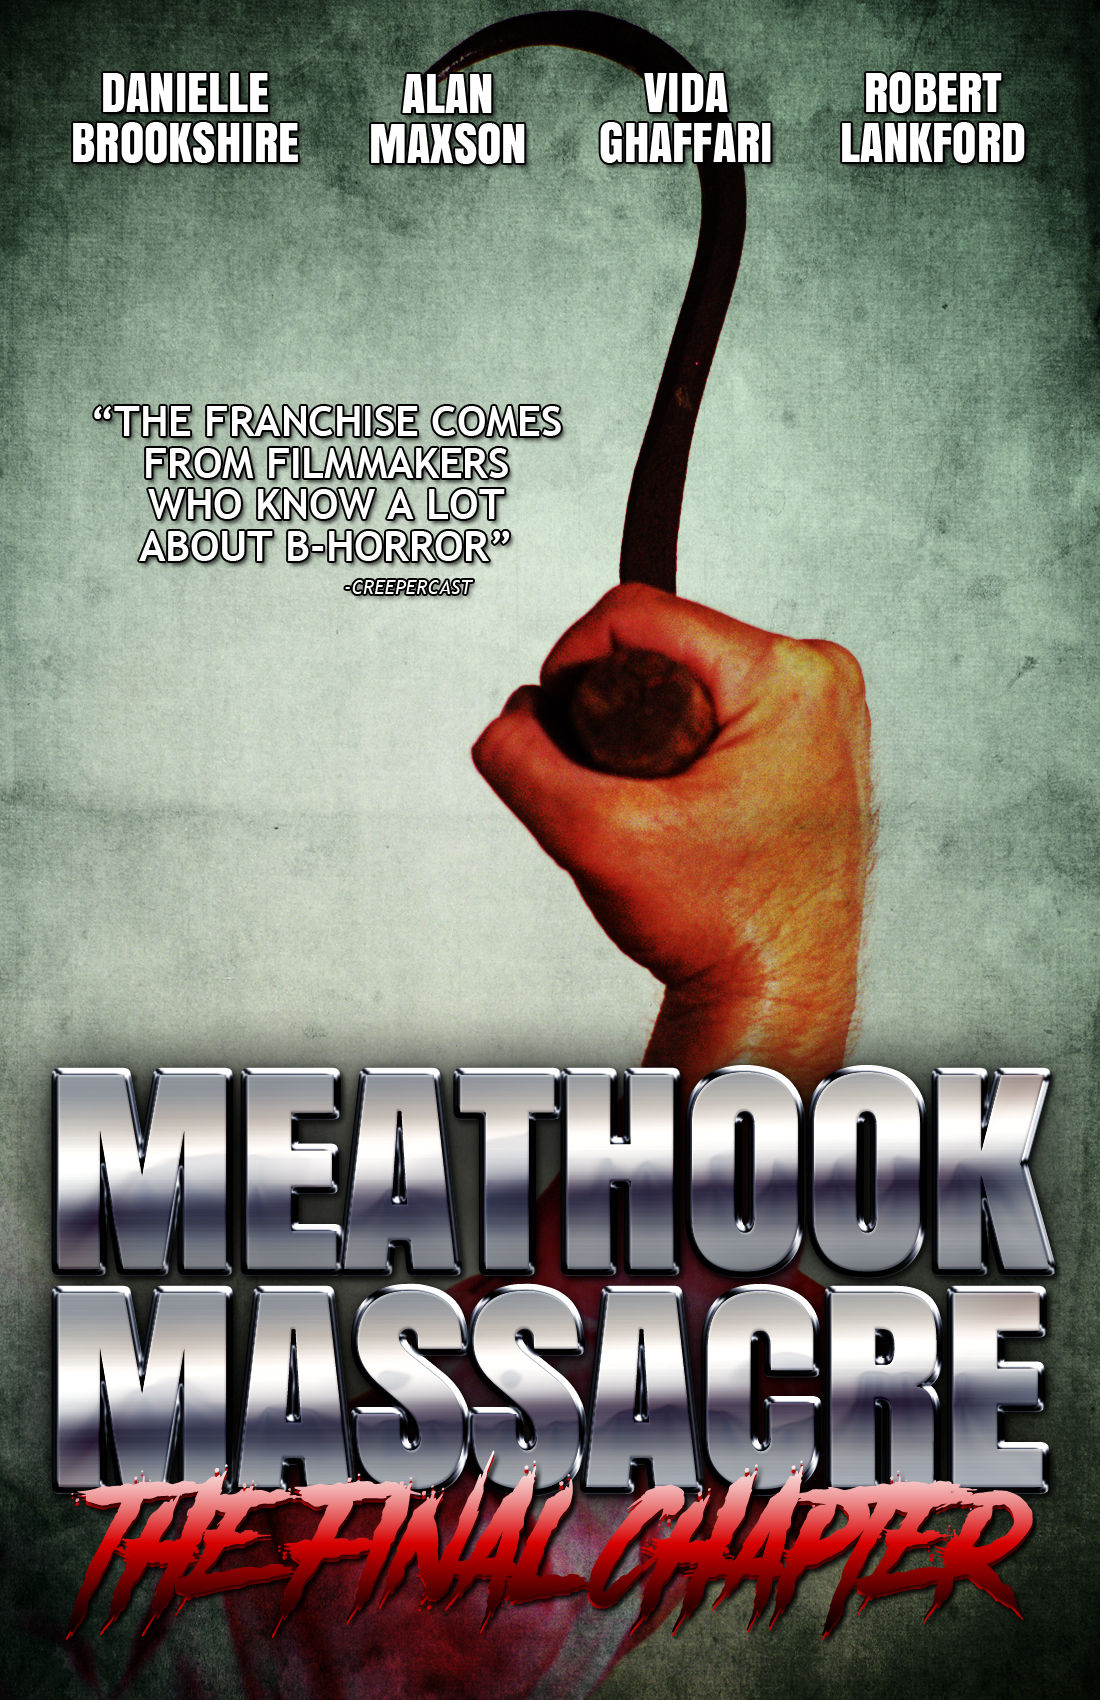 Meathook Massacre 3: First Hunt — Movie on Whatcha